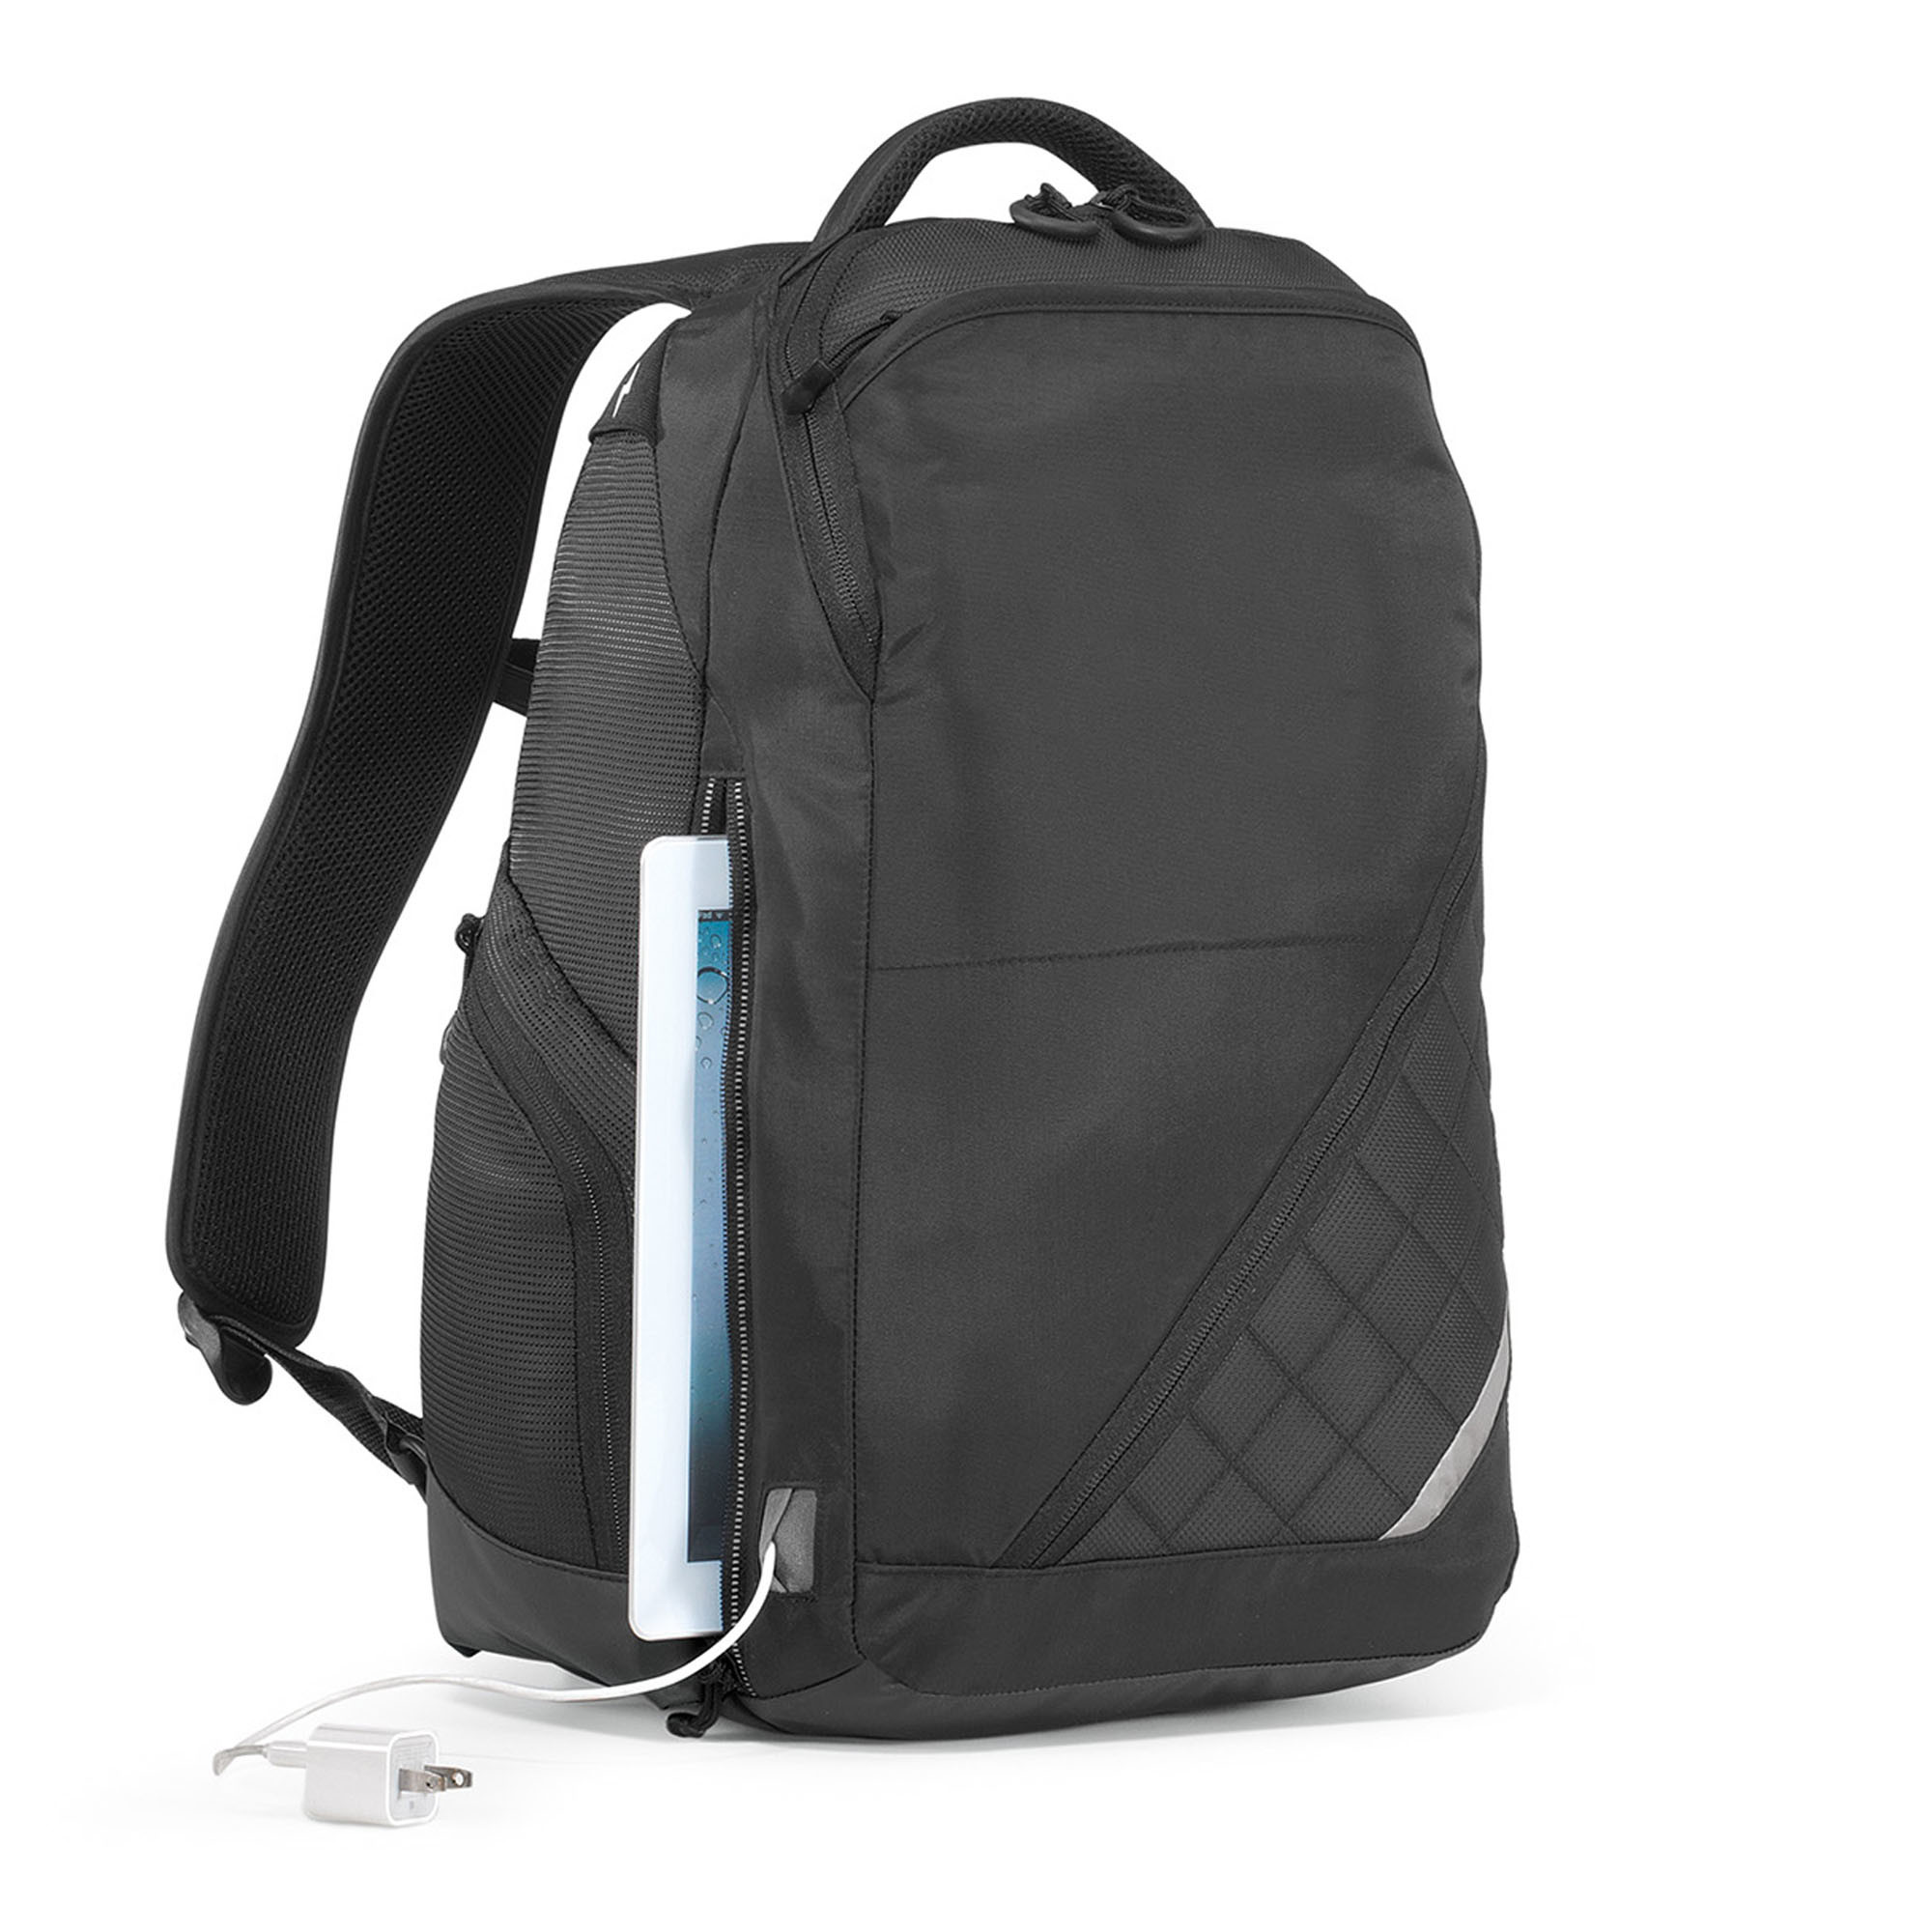 Gemline 5250 - Volt Charging Backpack